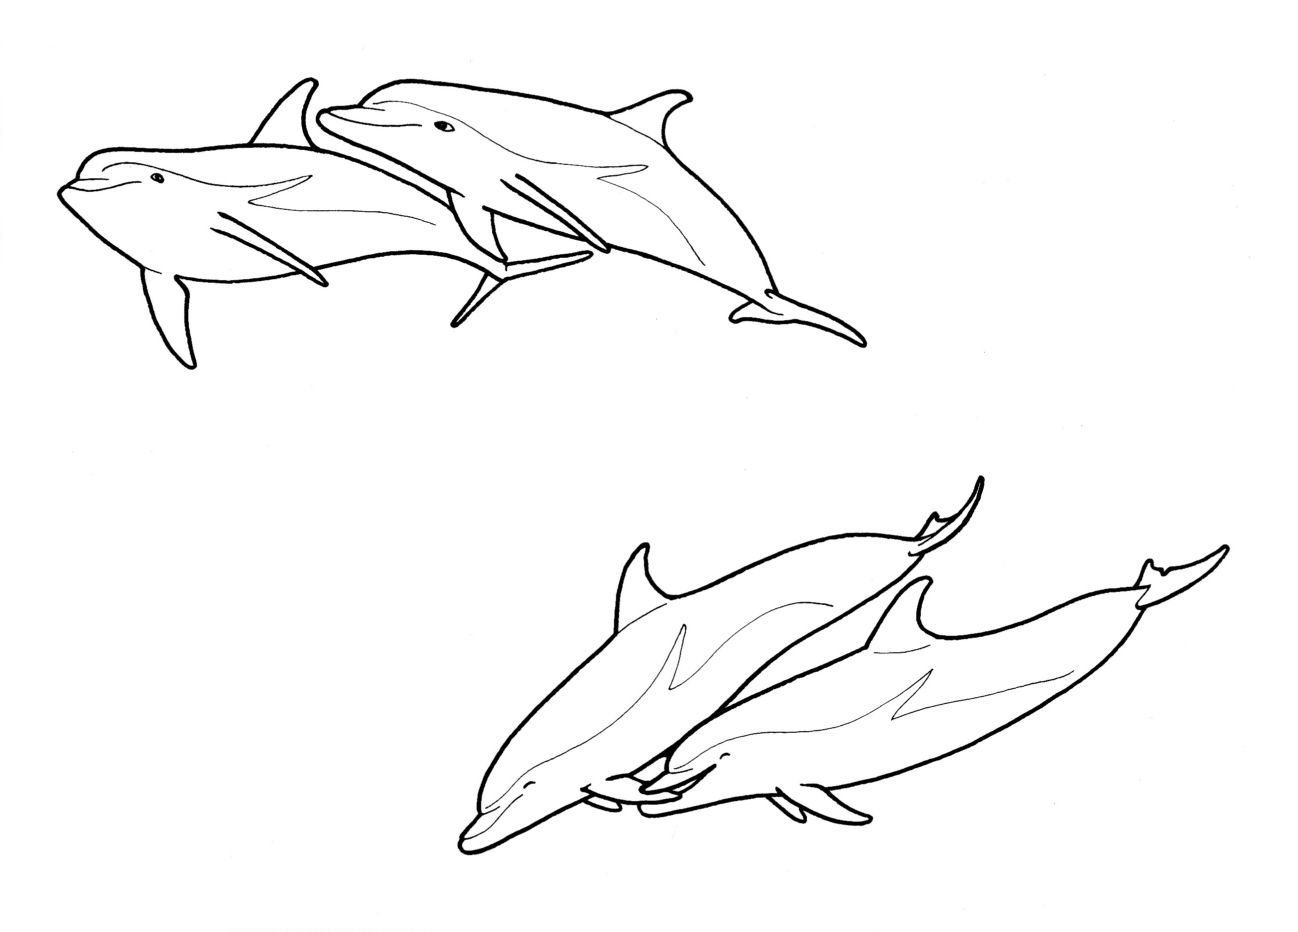 Στη διάρκεια της ερωτοτροπίας τα δύο δελφίνια δαγκώνονται και τρίβονται το ένα με το άλλο, δείχνοντας τη διάθεσή τους